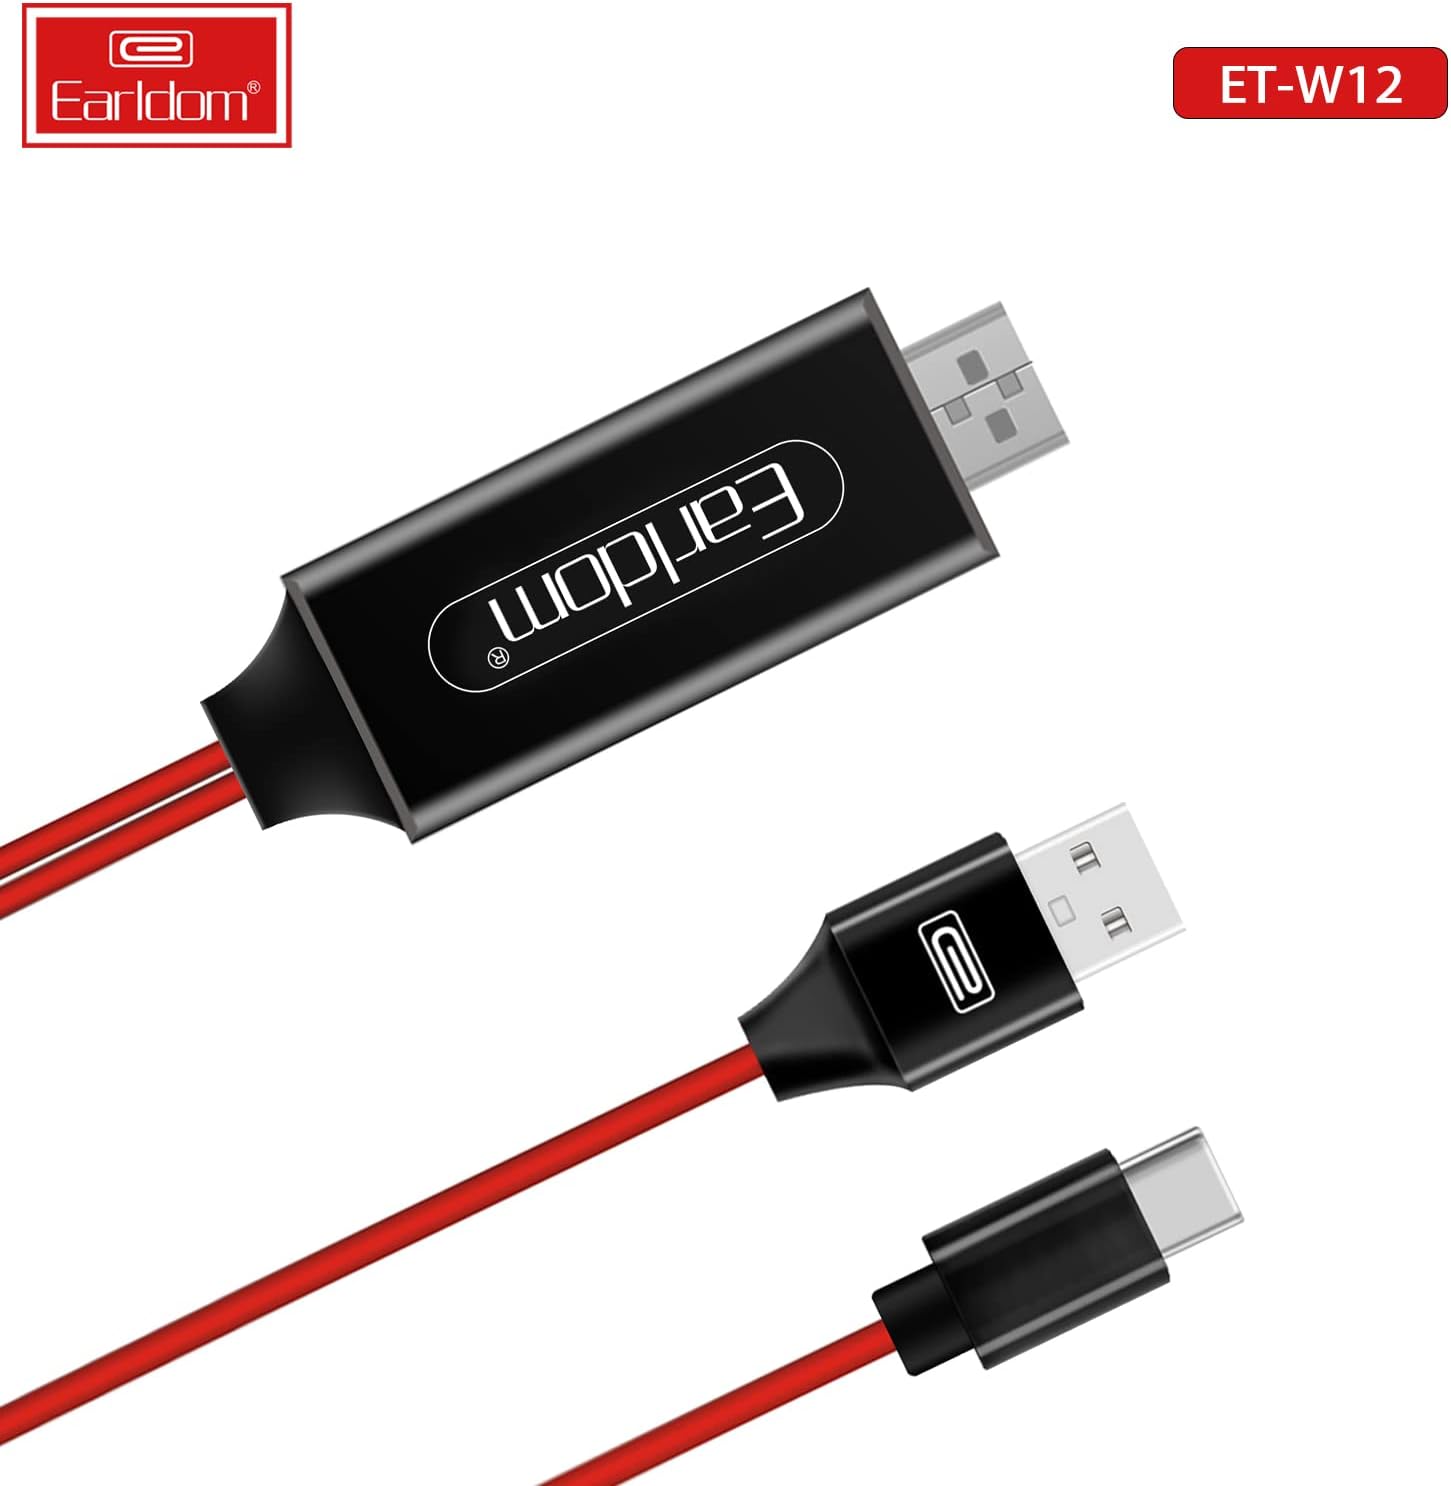 HDMI-adapter naar USB Type C-kabel